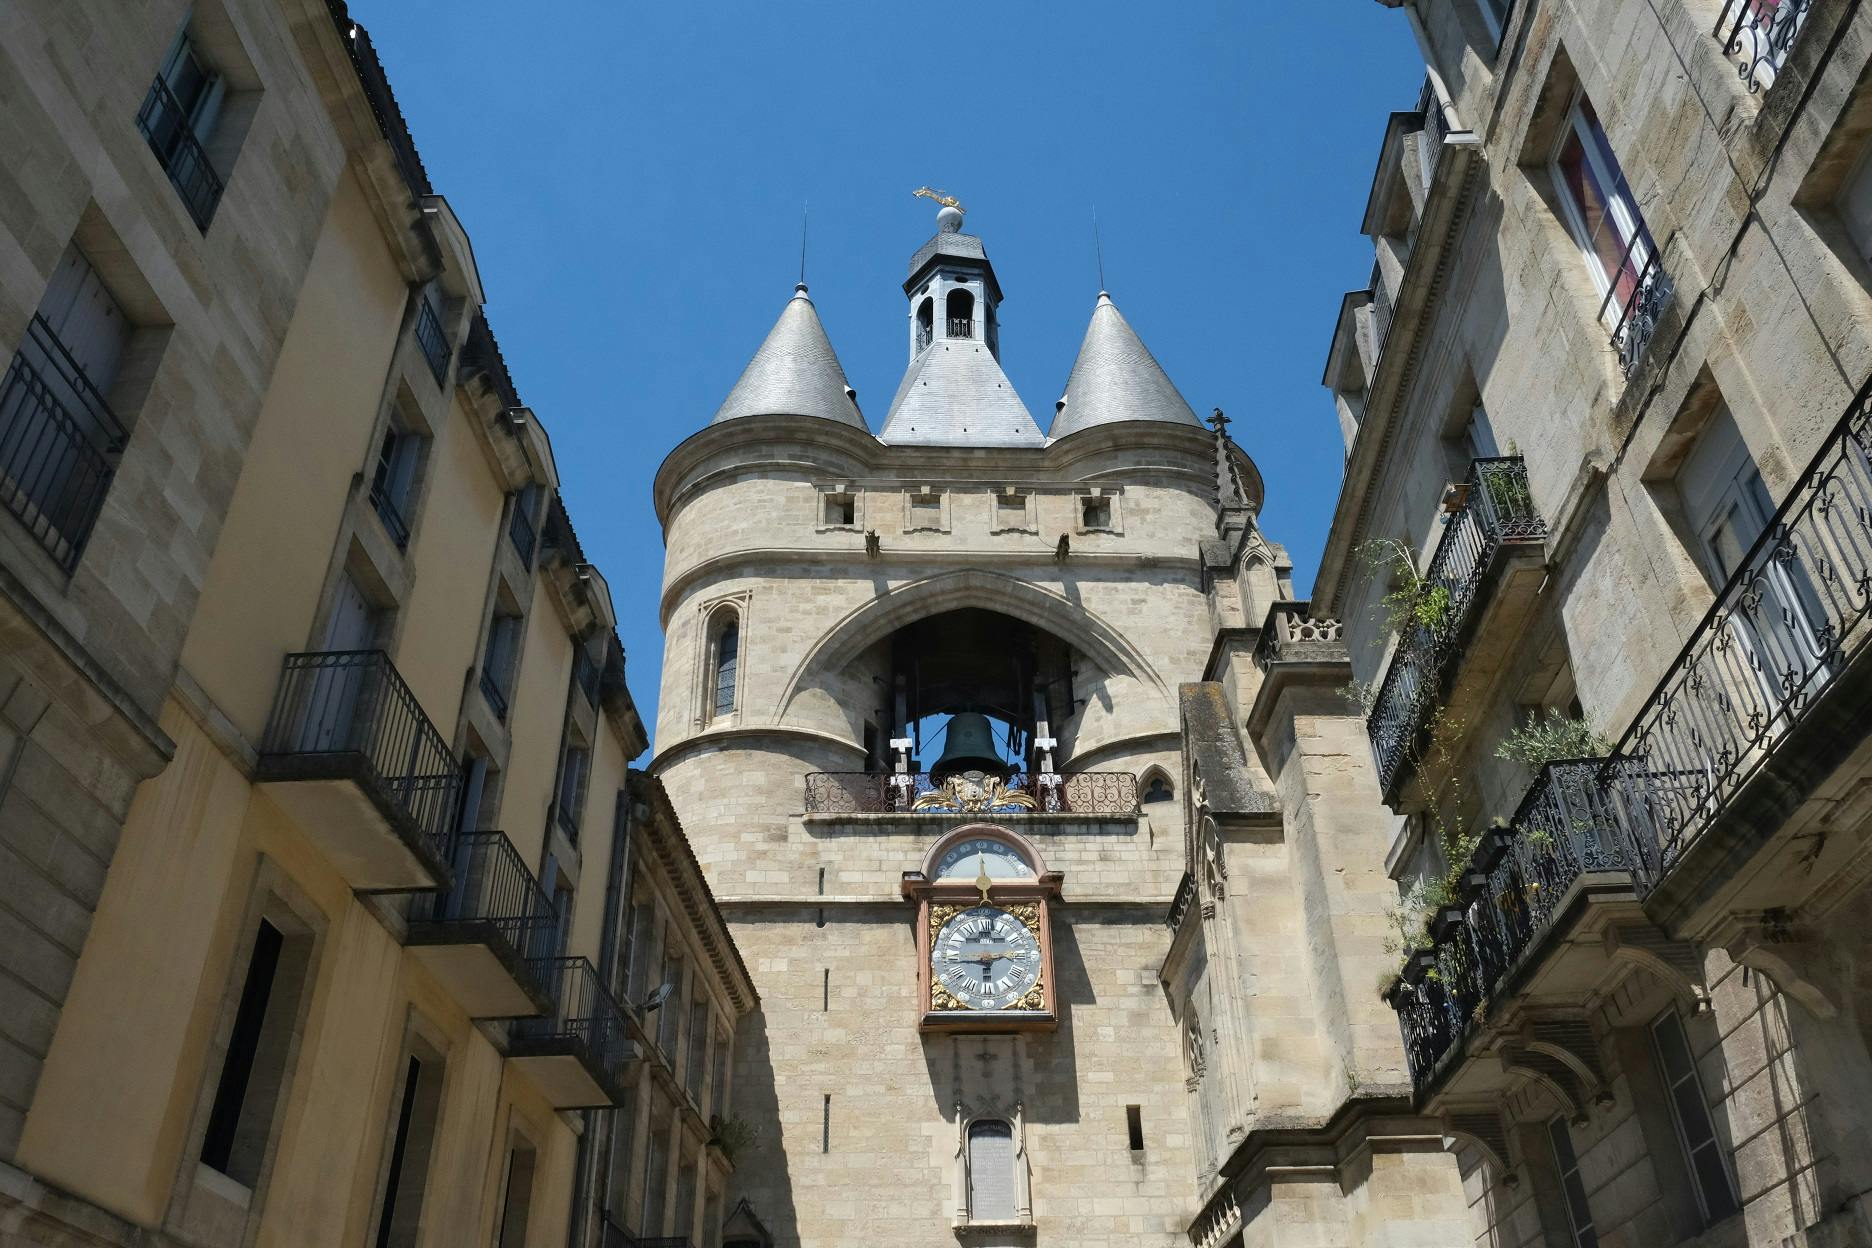 Excursão e jogo de exploração Old Town Bordeaux